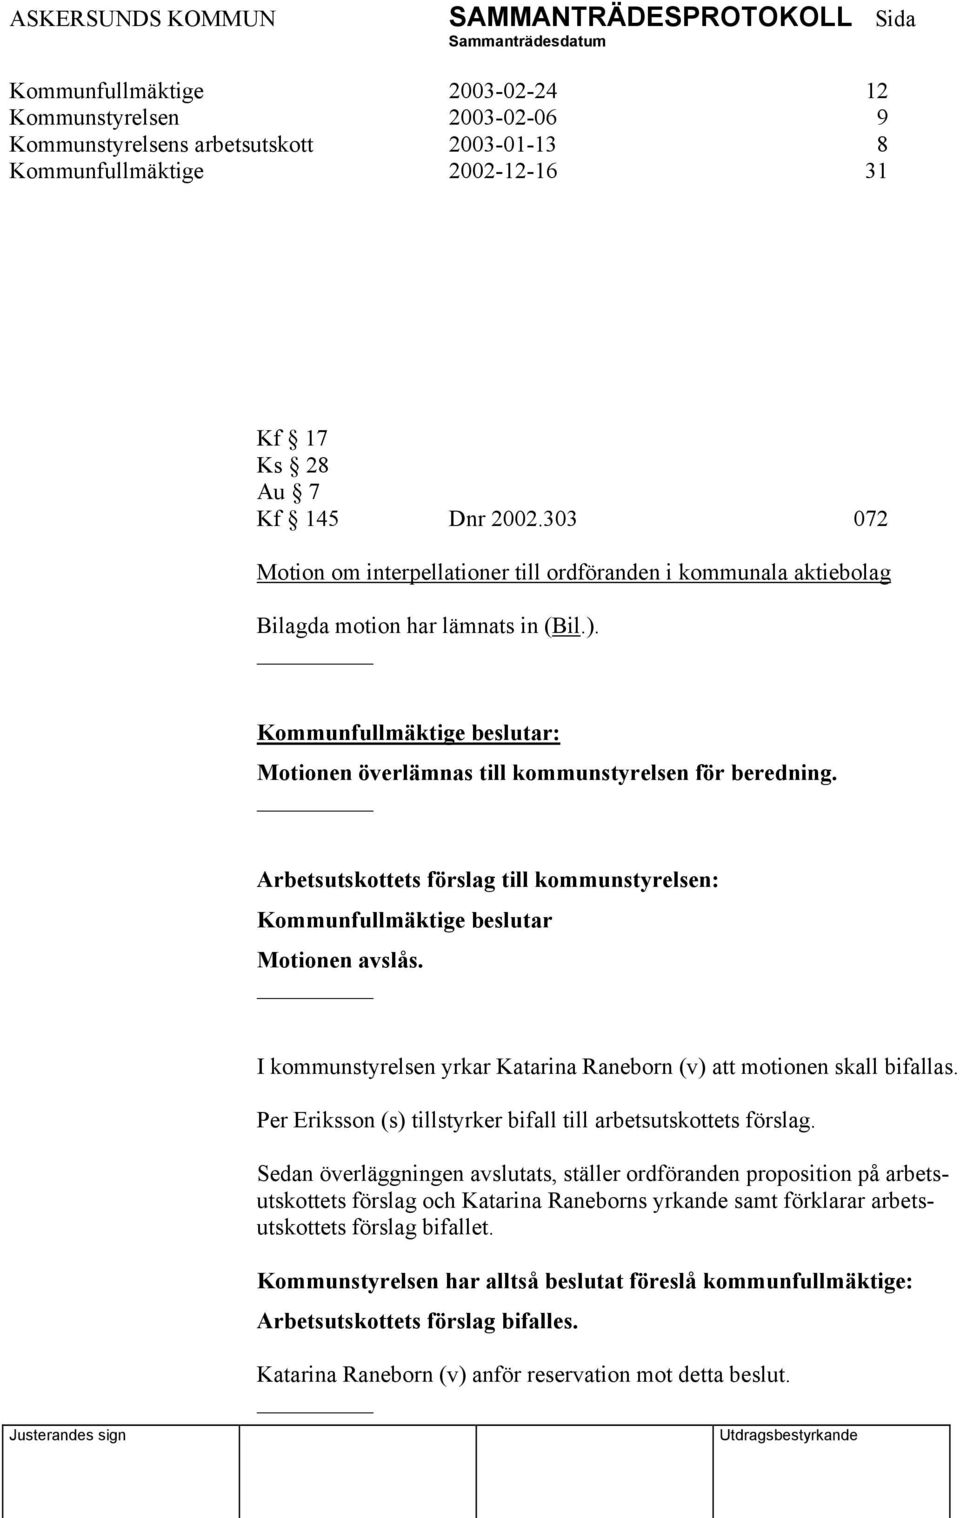 Arbetsutskottets förslag till kommunstyrelsen: Kommunfullmäktige beslutar Motionen avslås. I kommunstyrelsen yrkar Katarina Raneborn (v) att motionen skall bifallas.